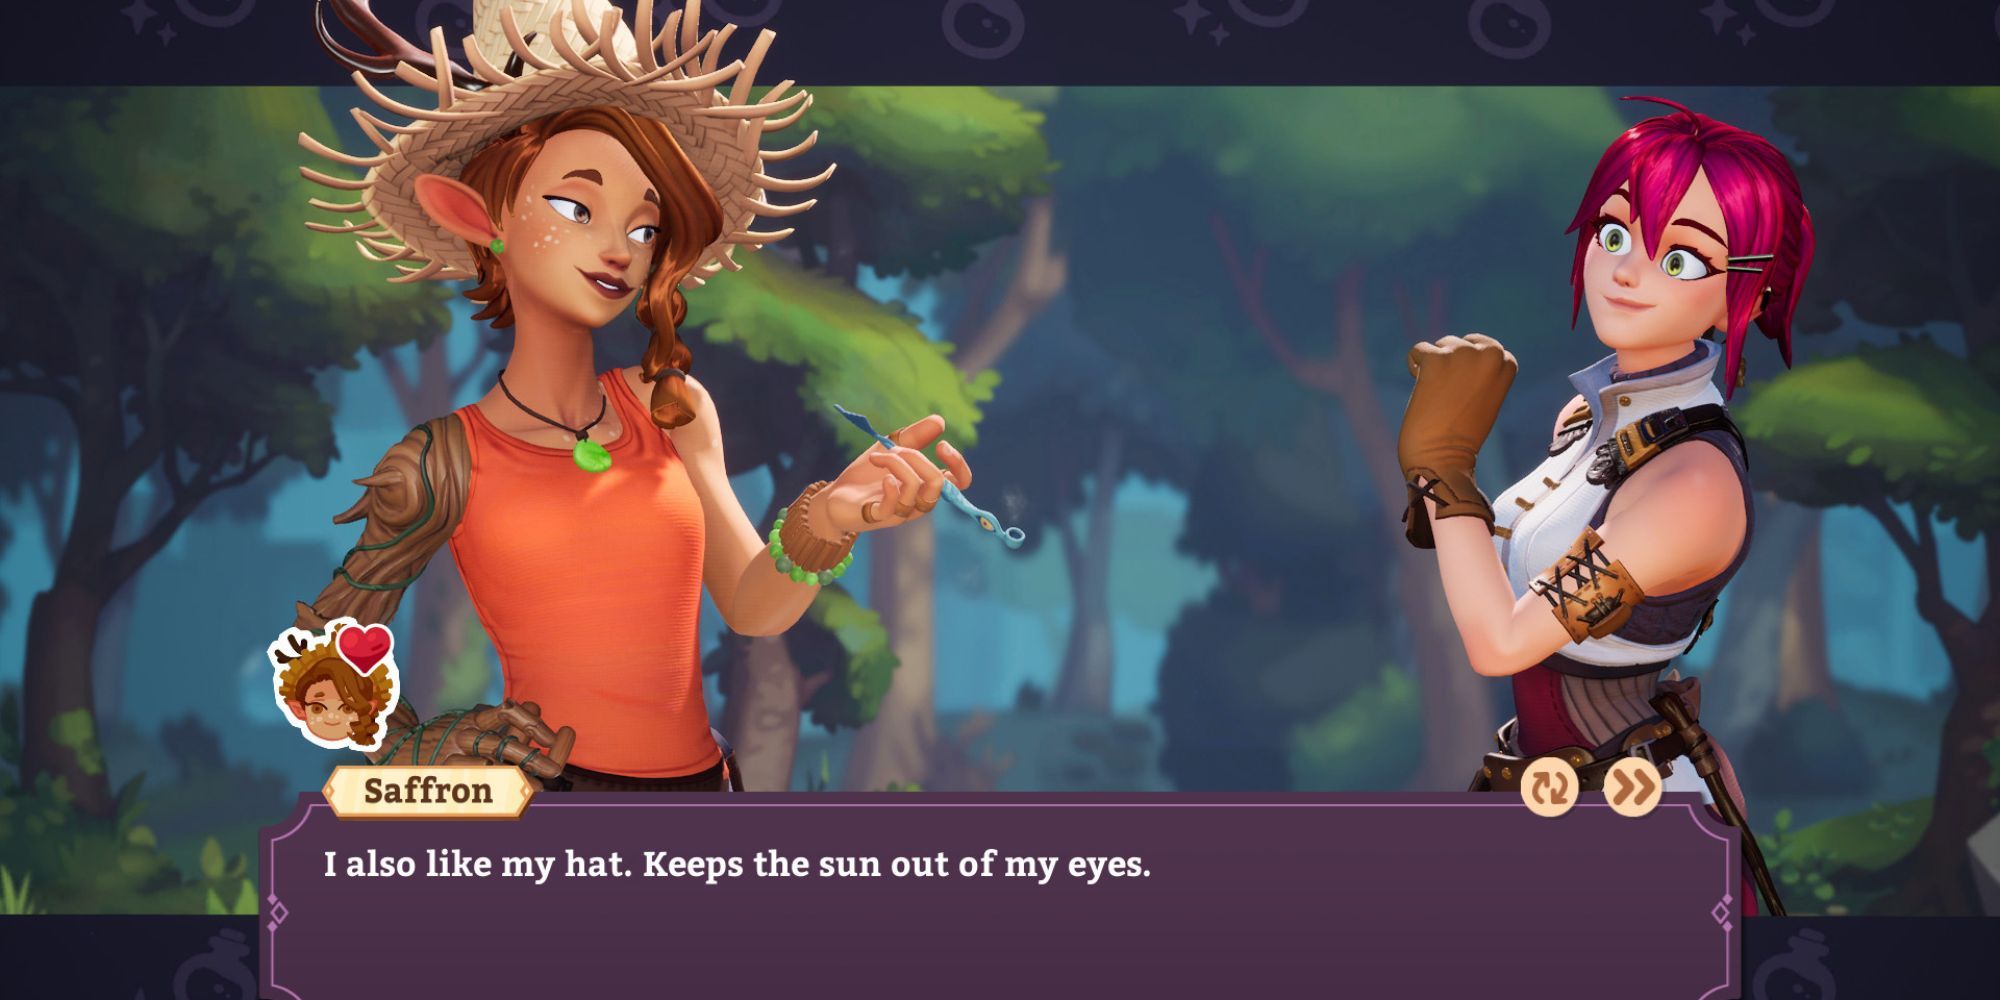 ポーショノミクスで太陽から目を守るために彼女が帽子の好みをプレイヤーに話している様子